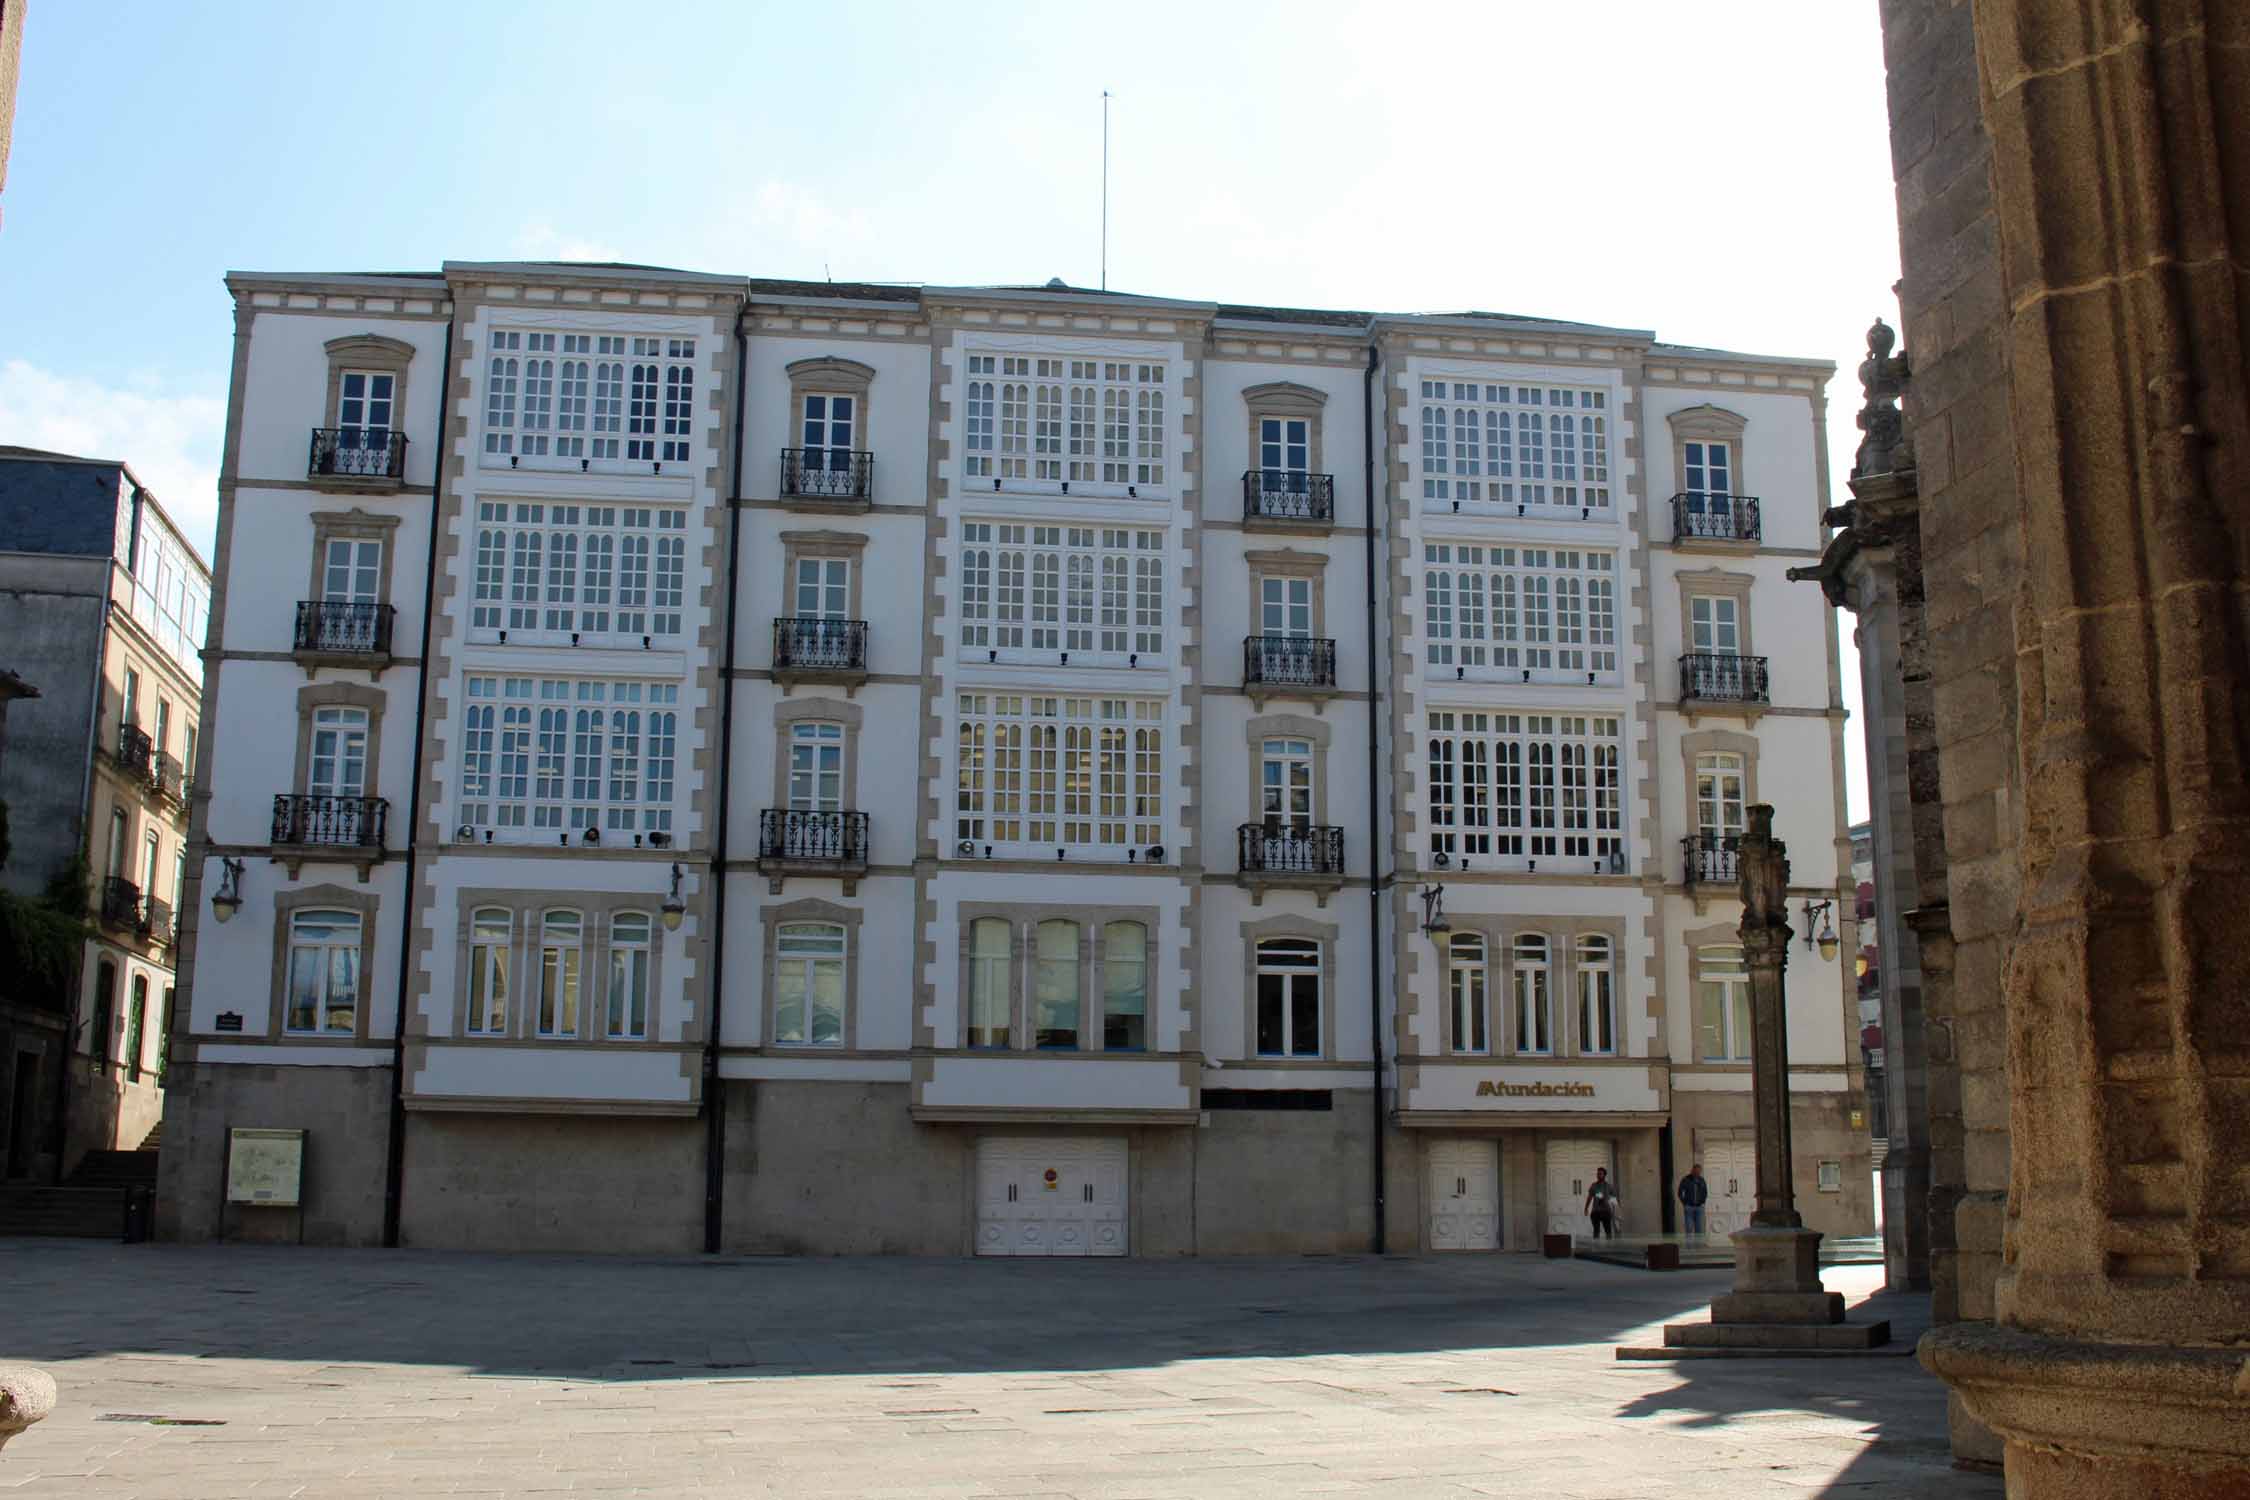 Lugo, bâtiment typique, place Santa Maria